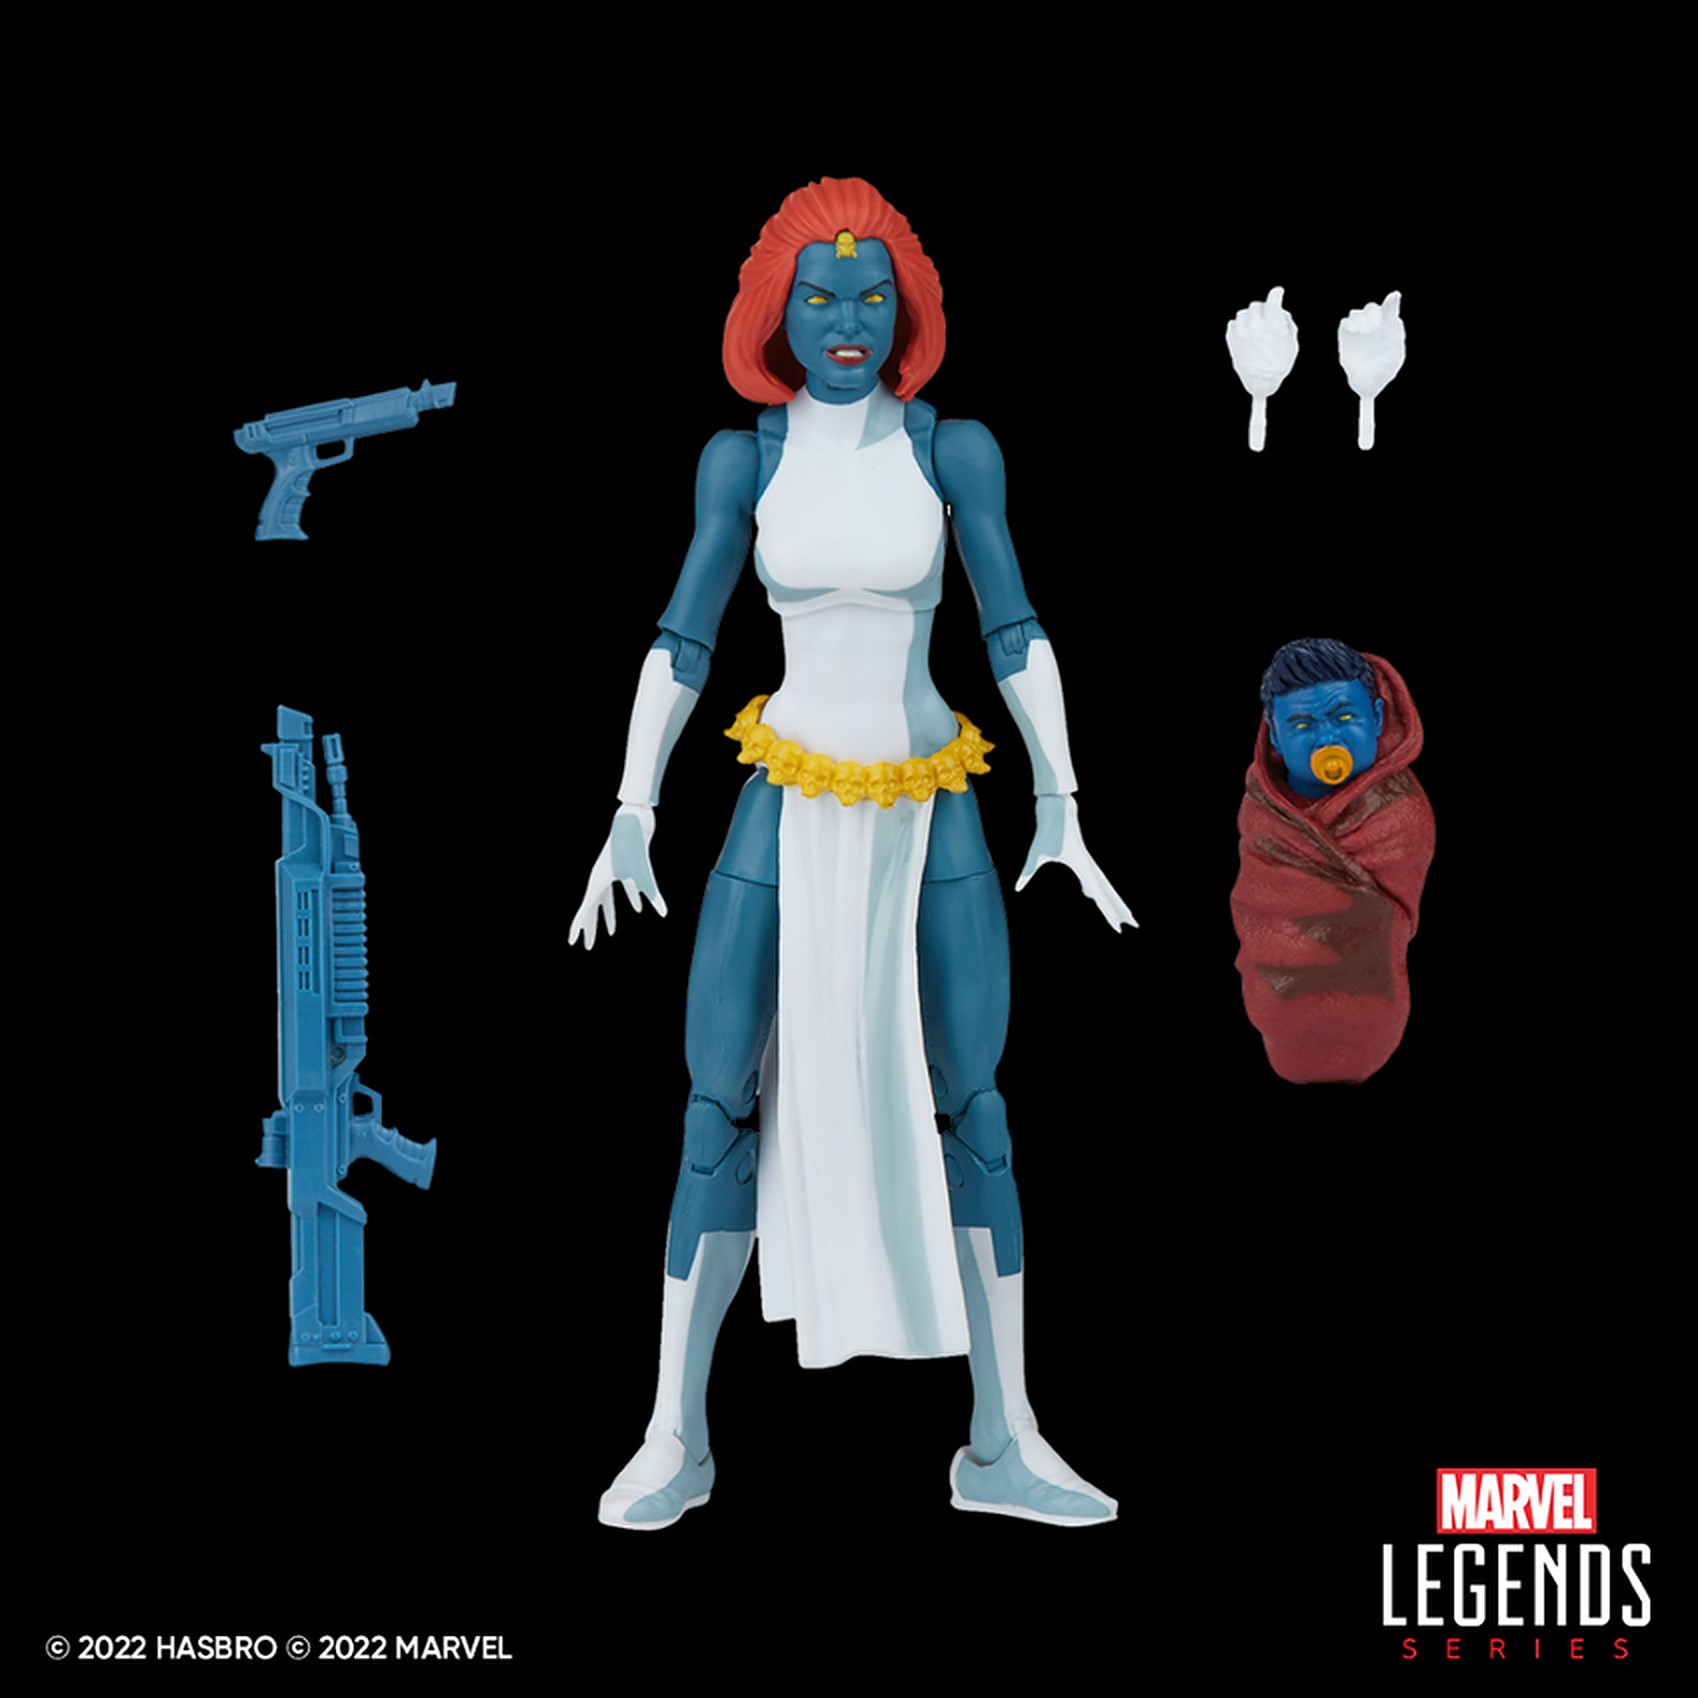 Marvel Legends Marvel's Mystique X-men Figure 2020 & MISB for sale online 